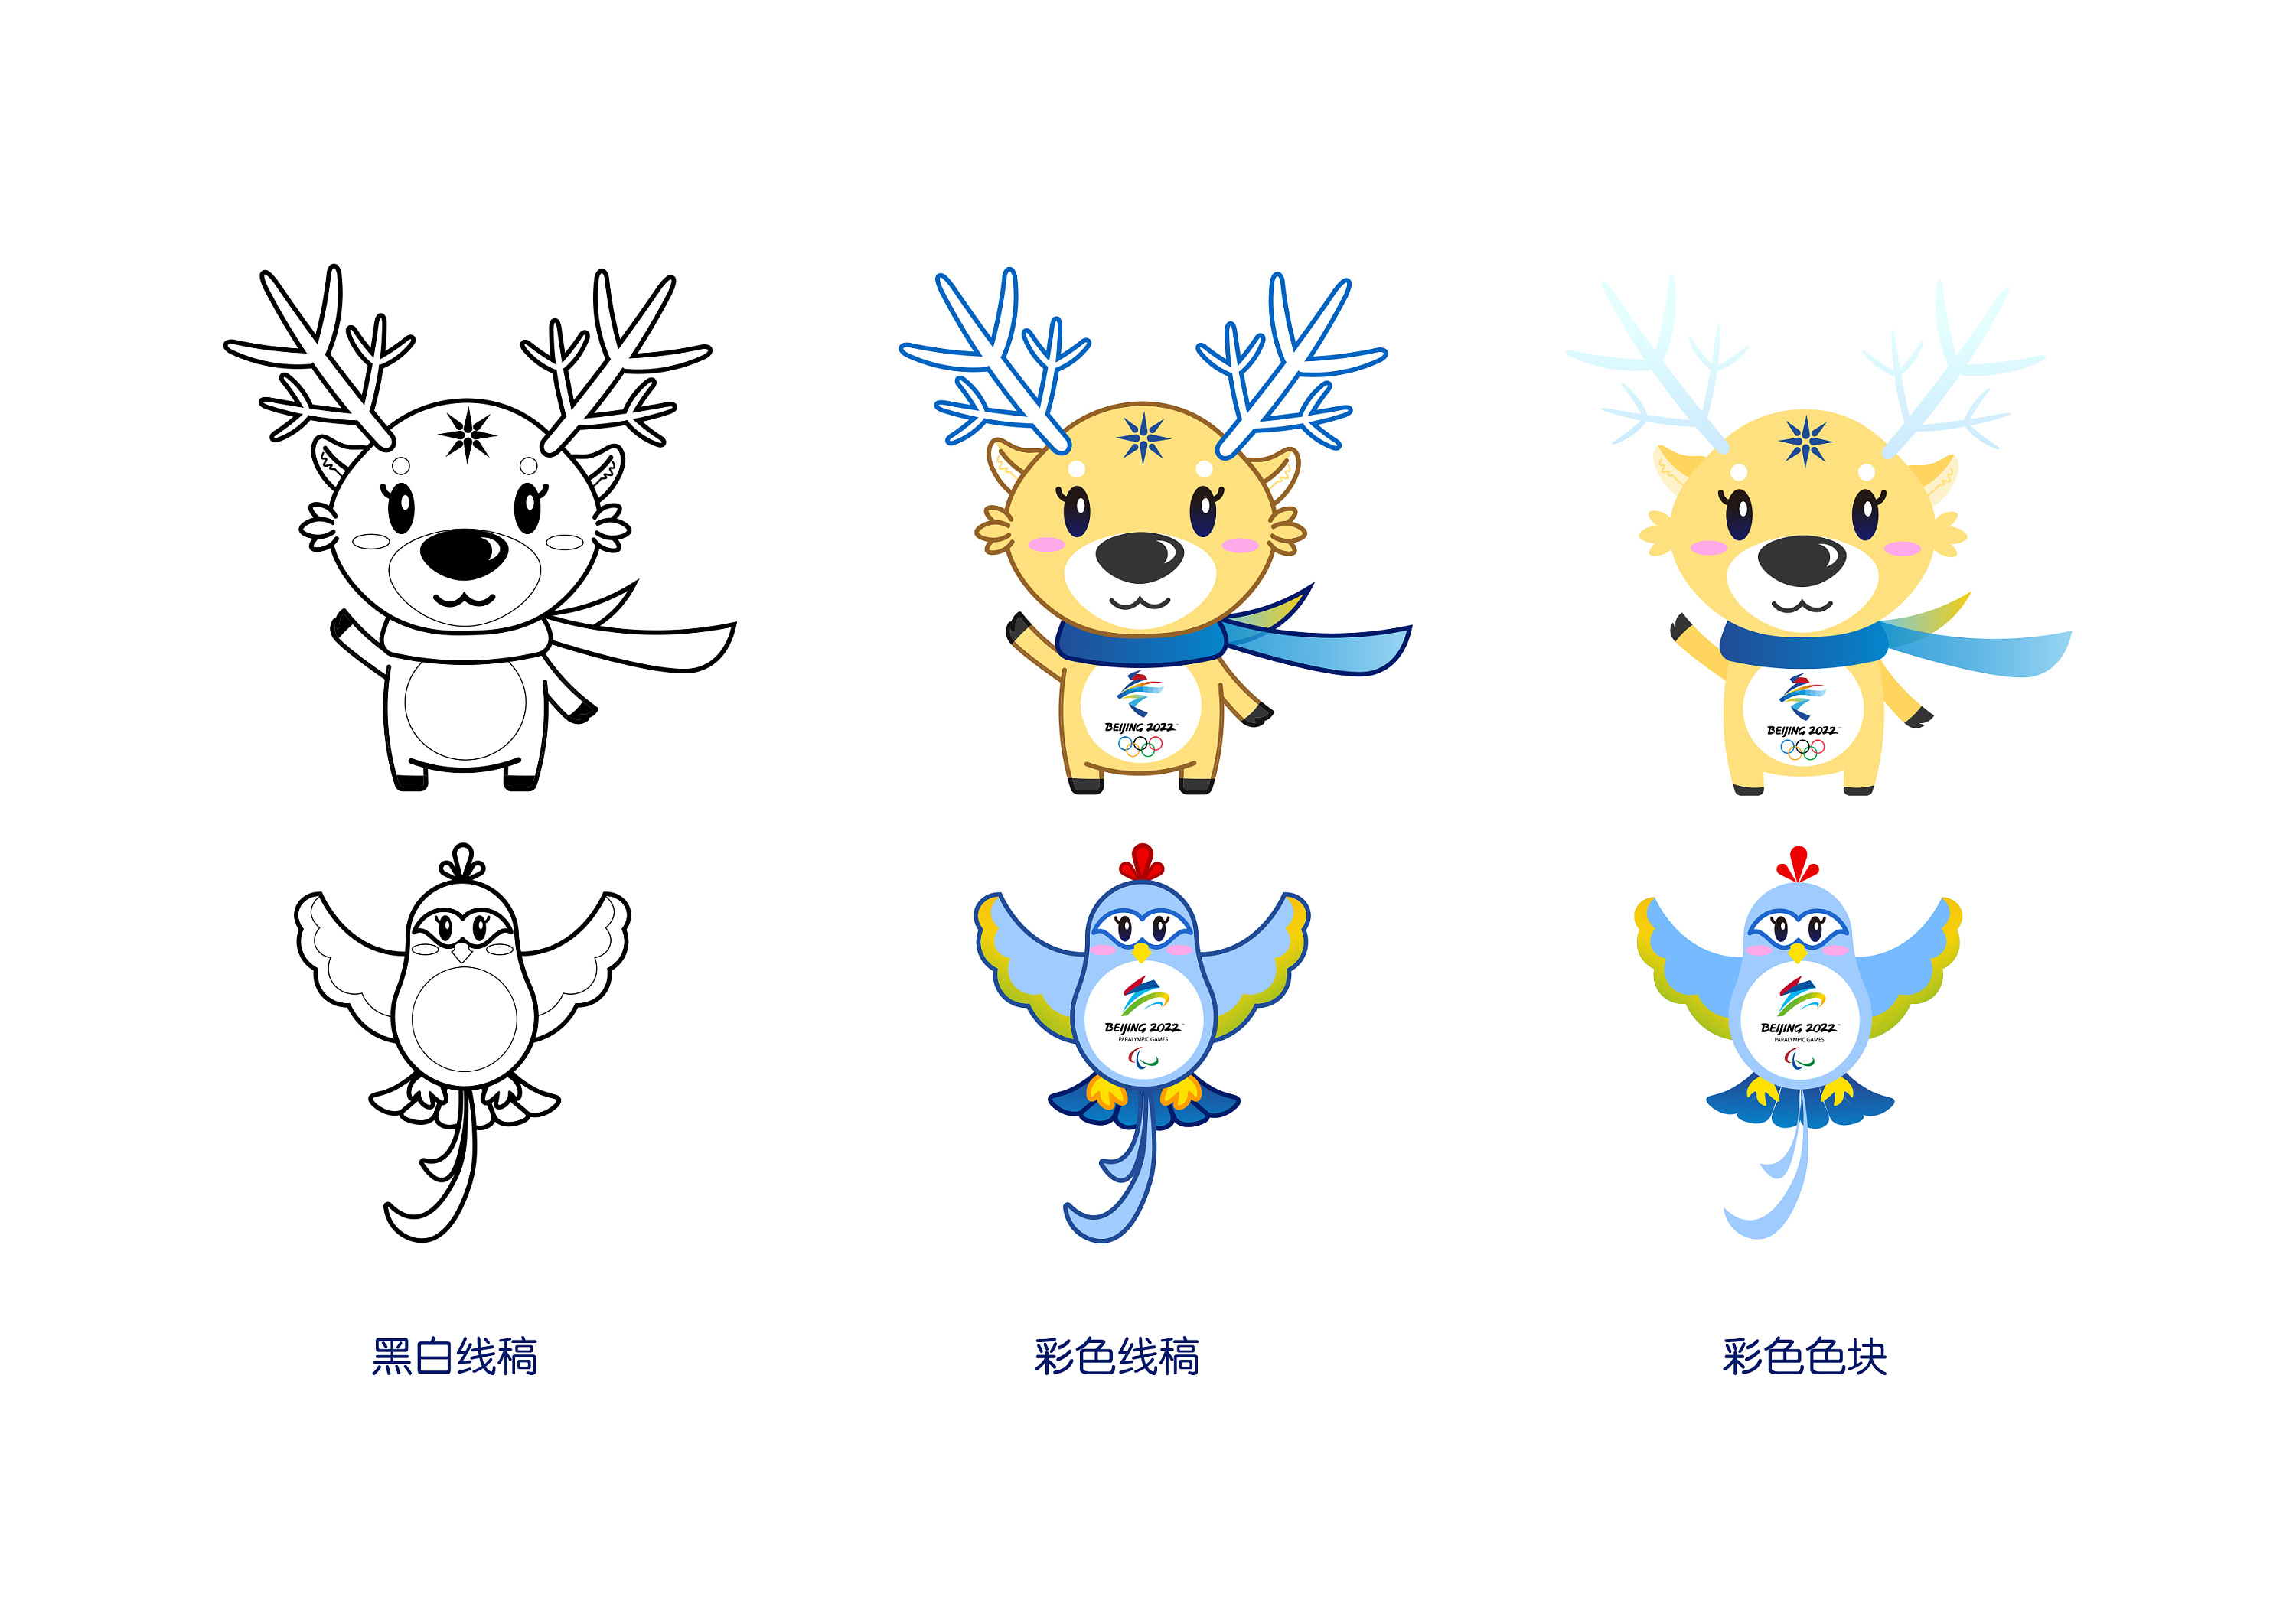 北京2022|冬奥会吉祥物设计